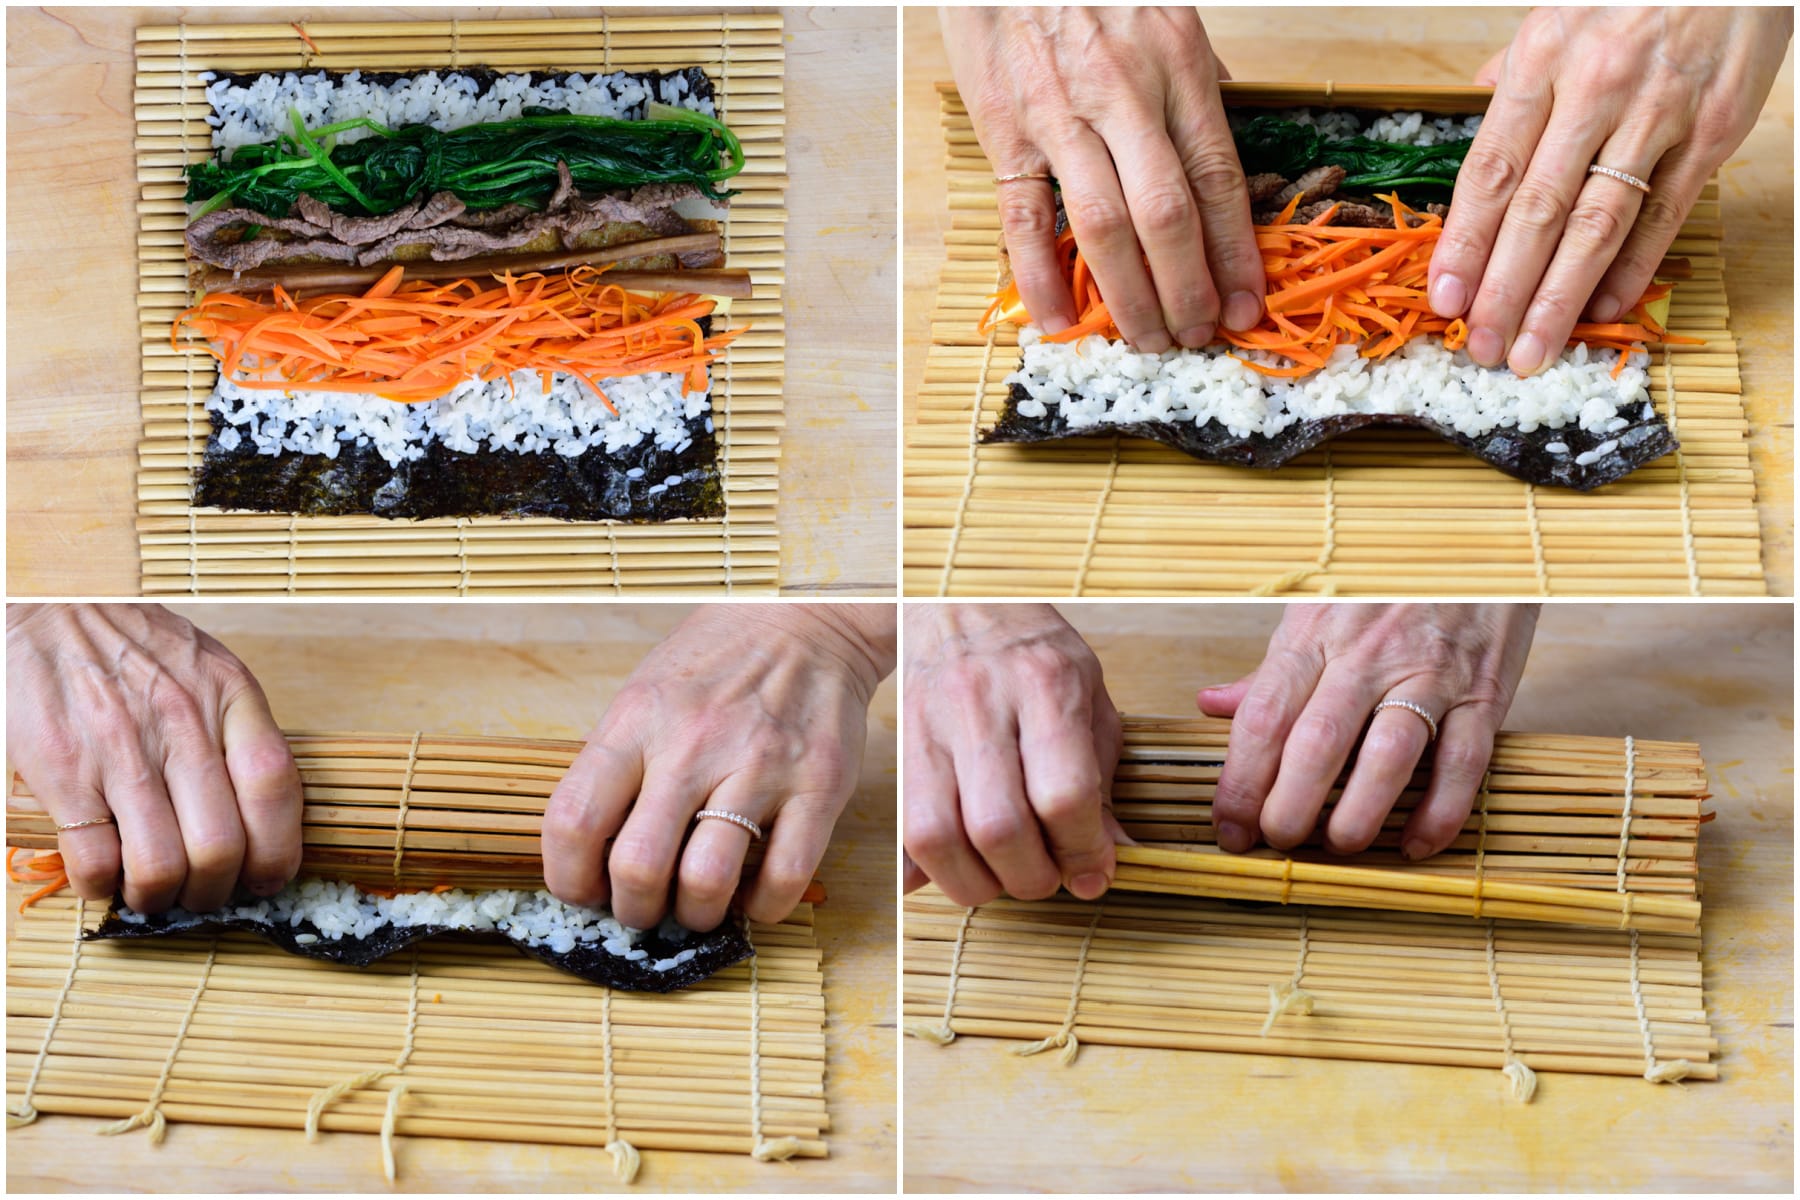 6 x 4 in 17 - Kimbap (Seaweed Rice Rolls)